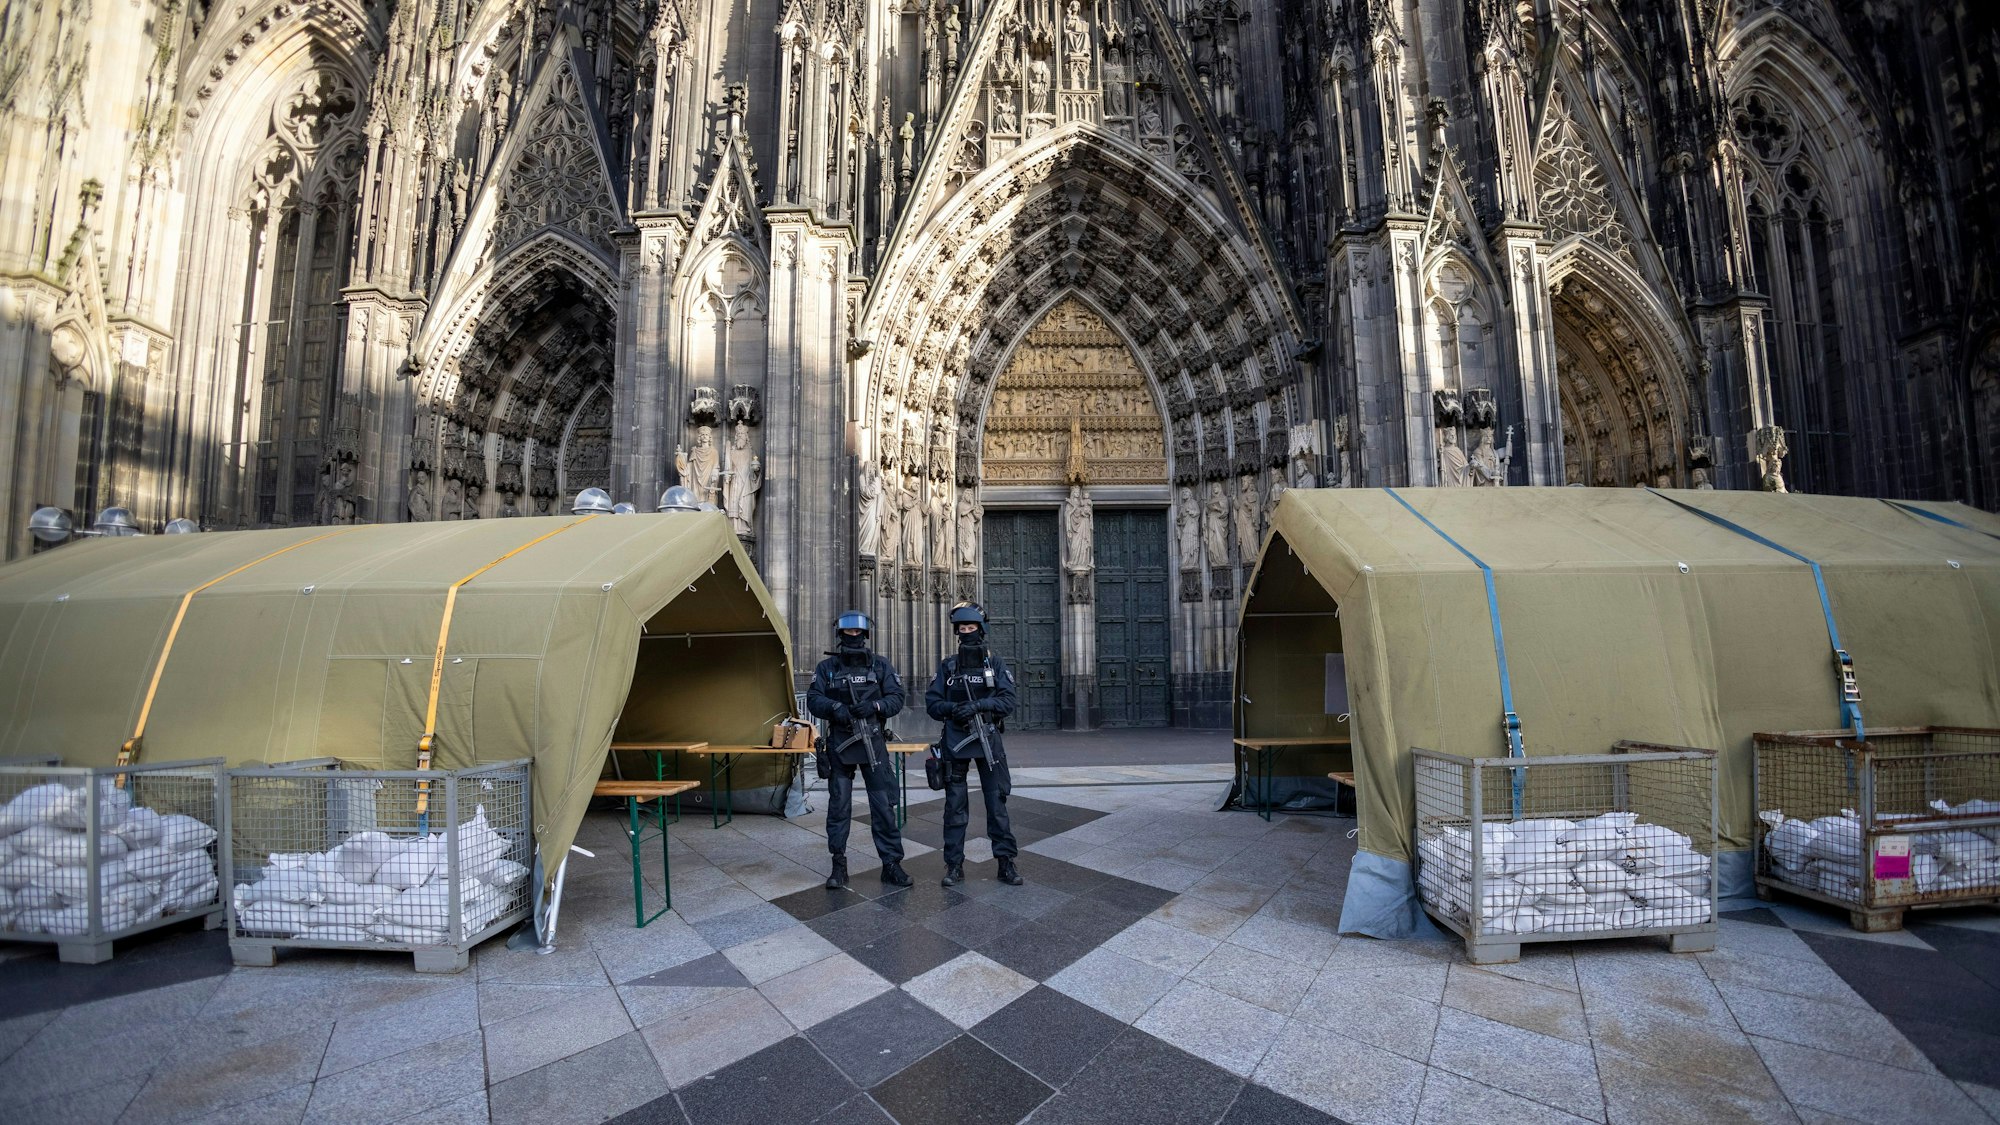 Polizisten stehen mit Maschinenpistolen vor dem Kölner Dom. Neben ihnen stehen Zelte.